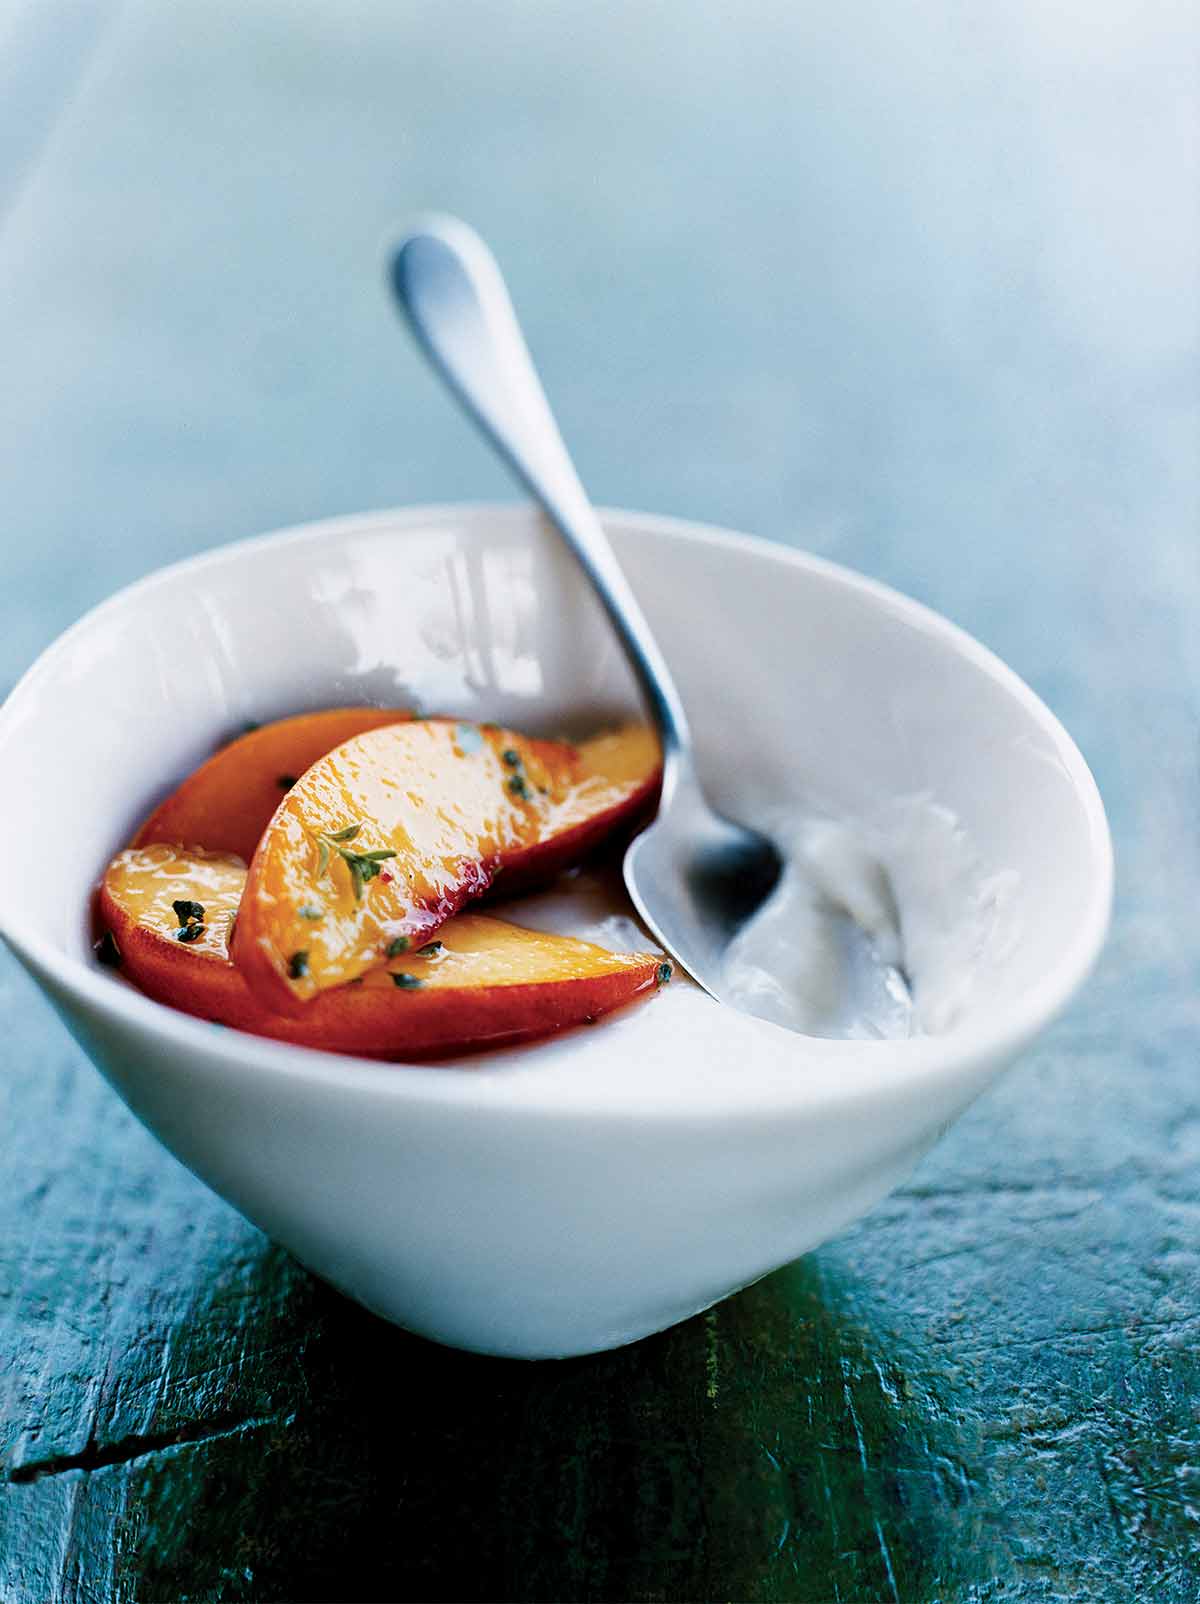 En vit skål fylld med pannacotta med persikor, garnerad med timjan och en sked vilande inuti.